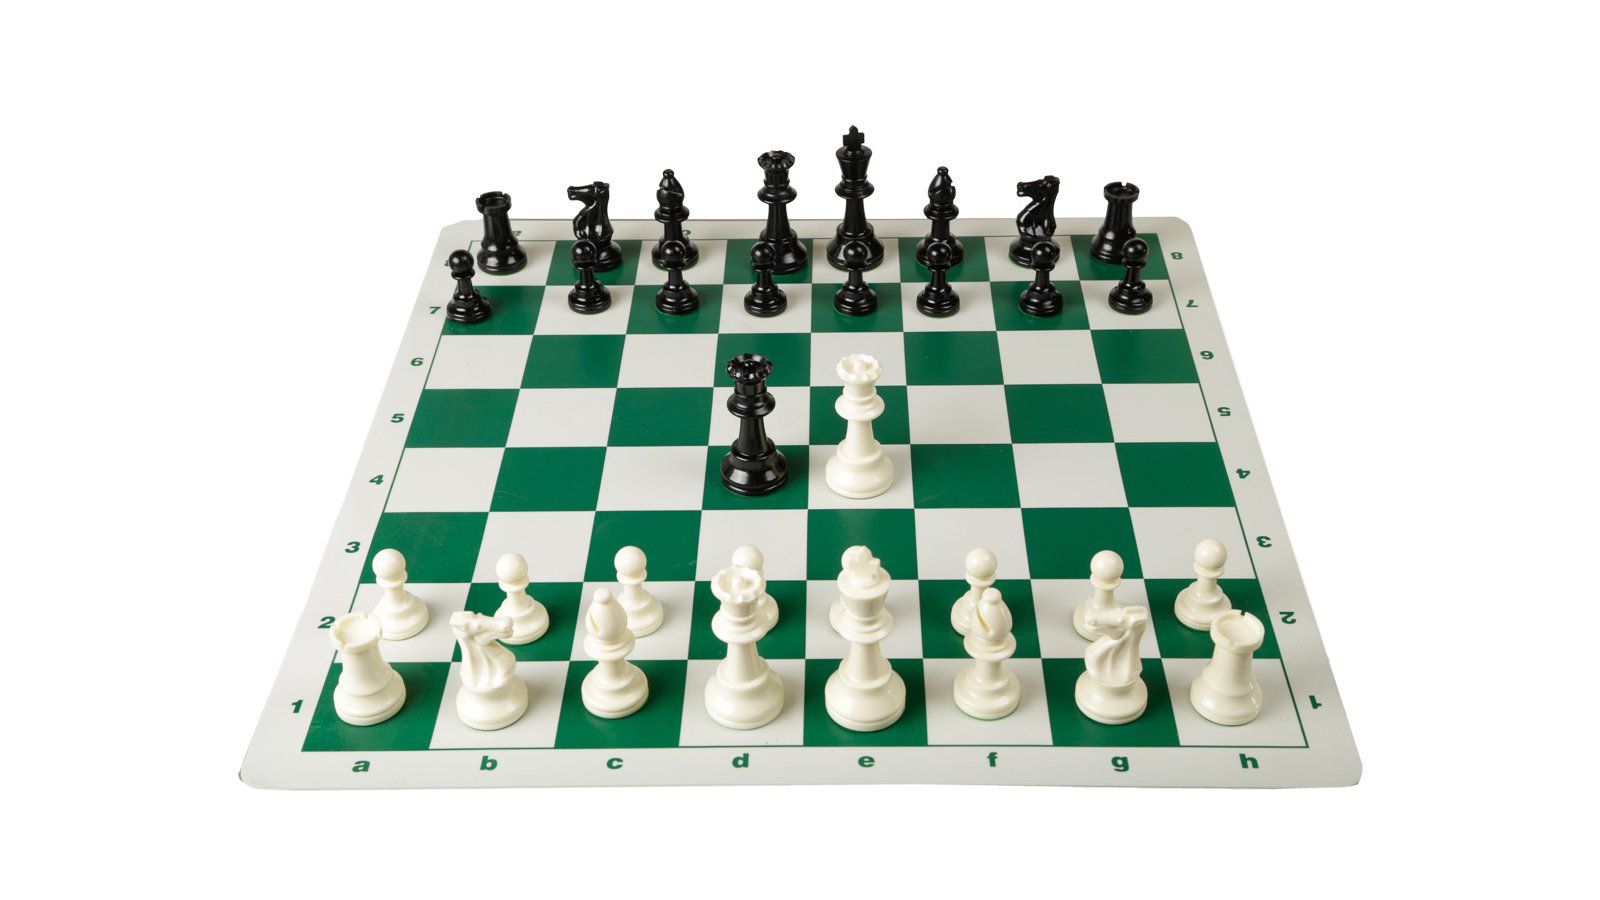 Tournament Chess Board